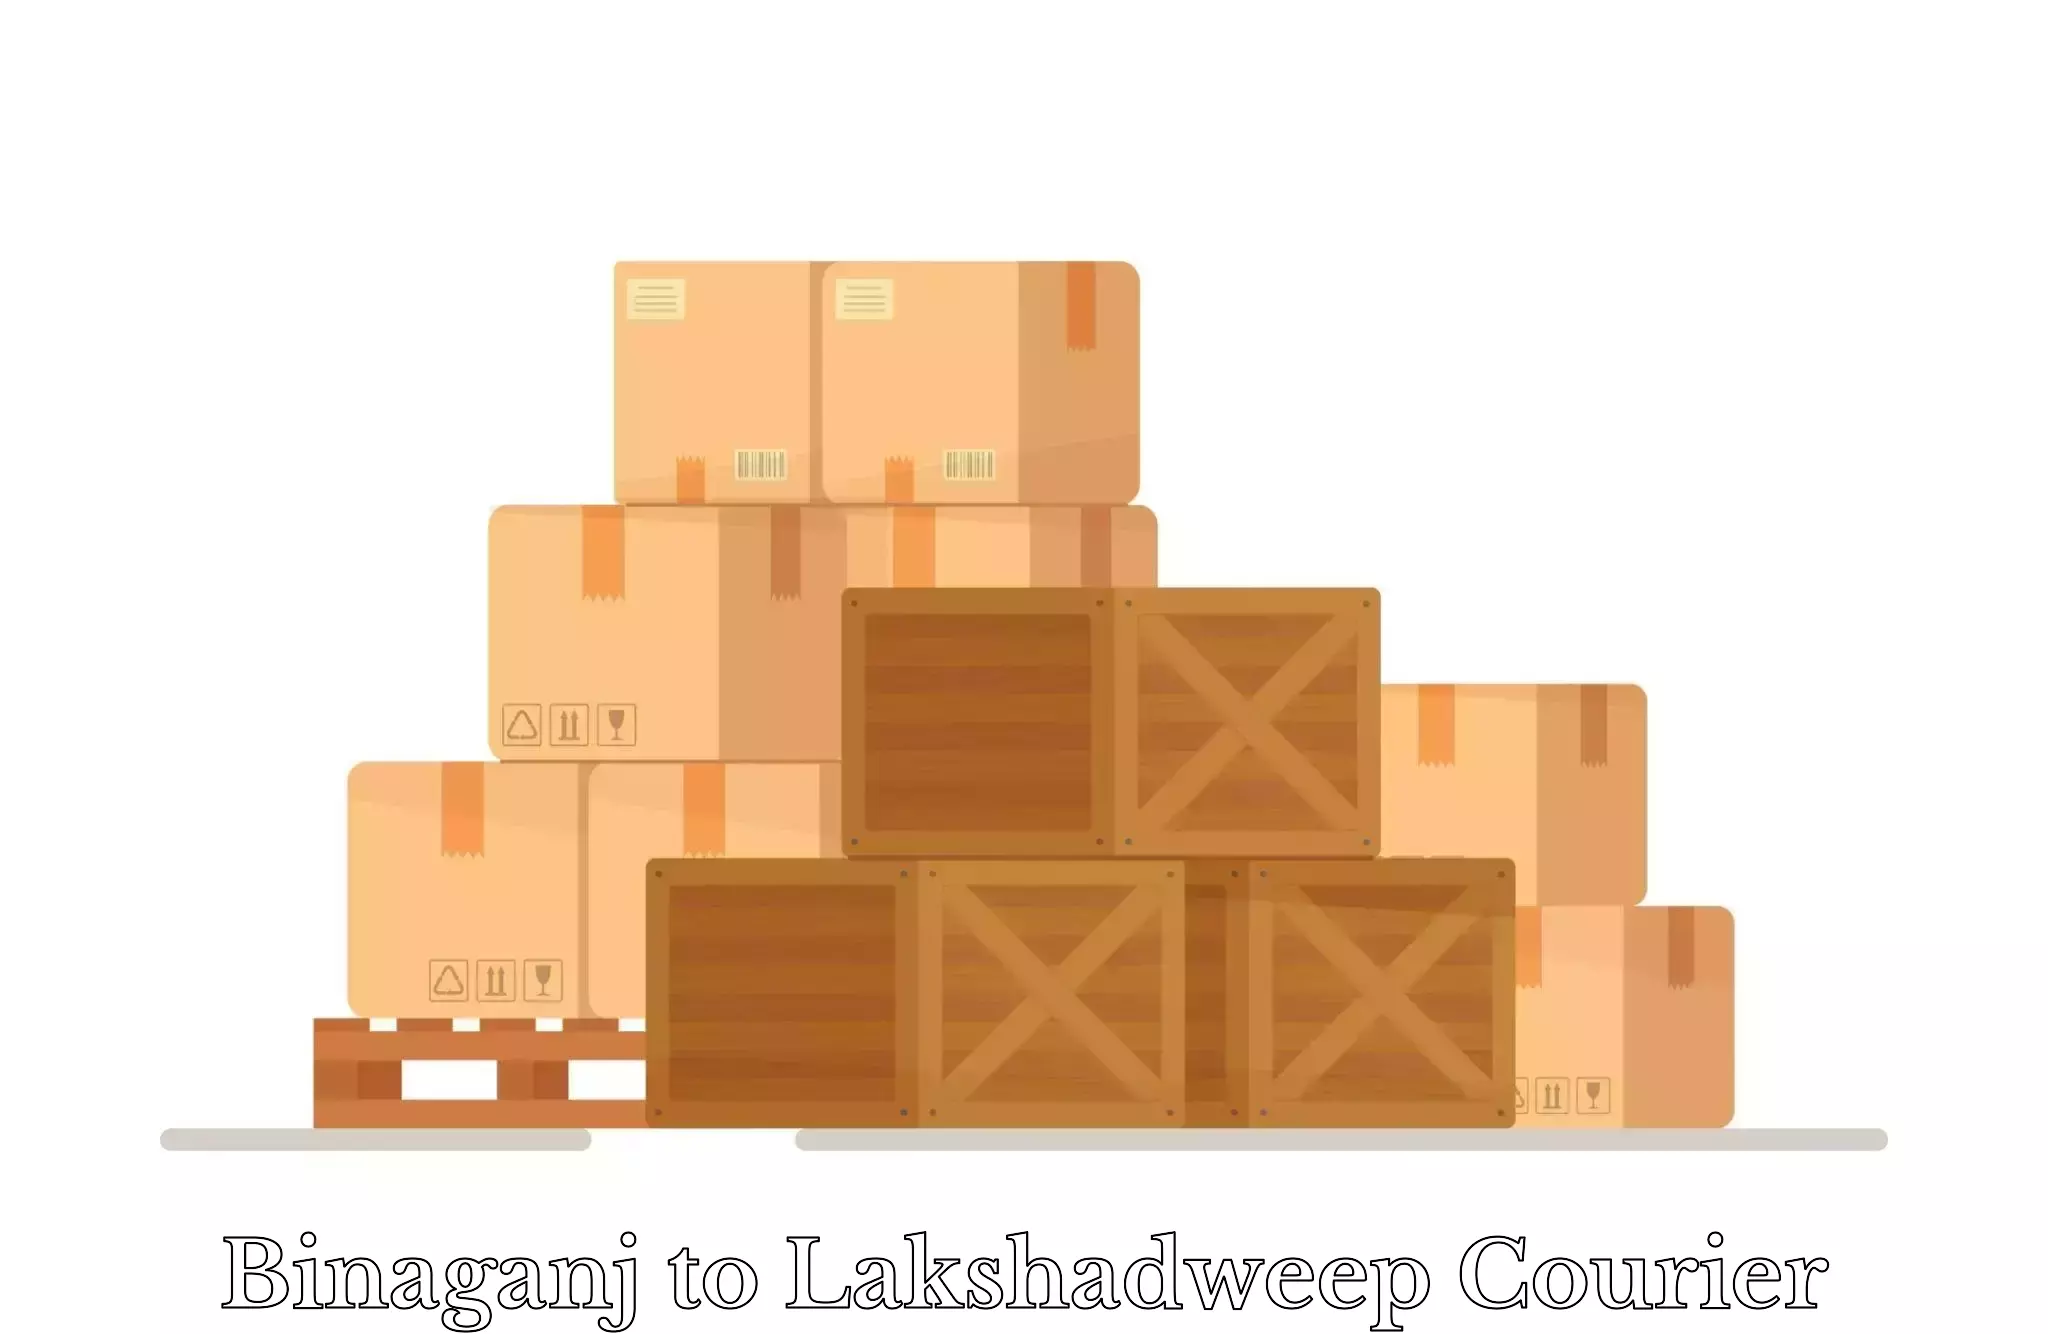 Luggage transport service Binaganj to Lakshadweep